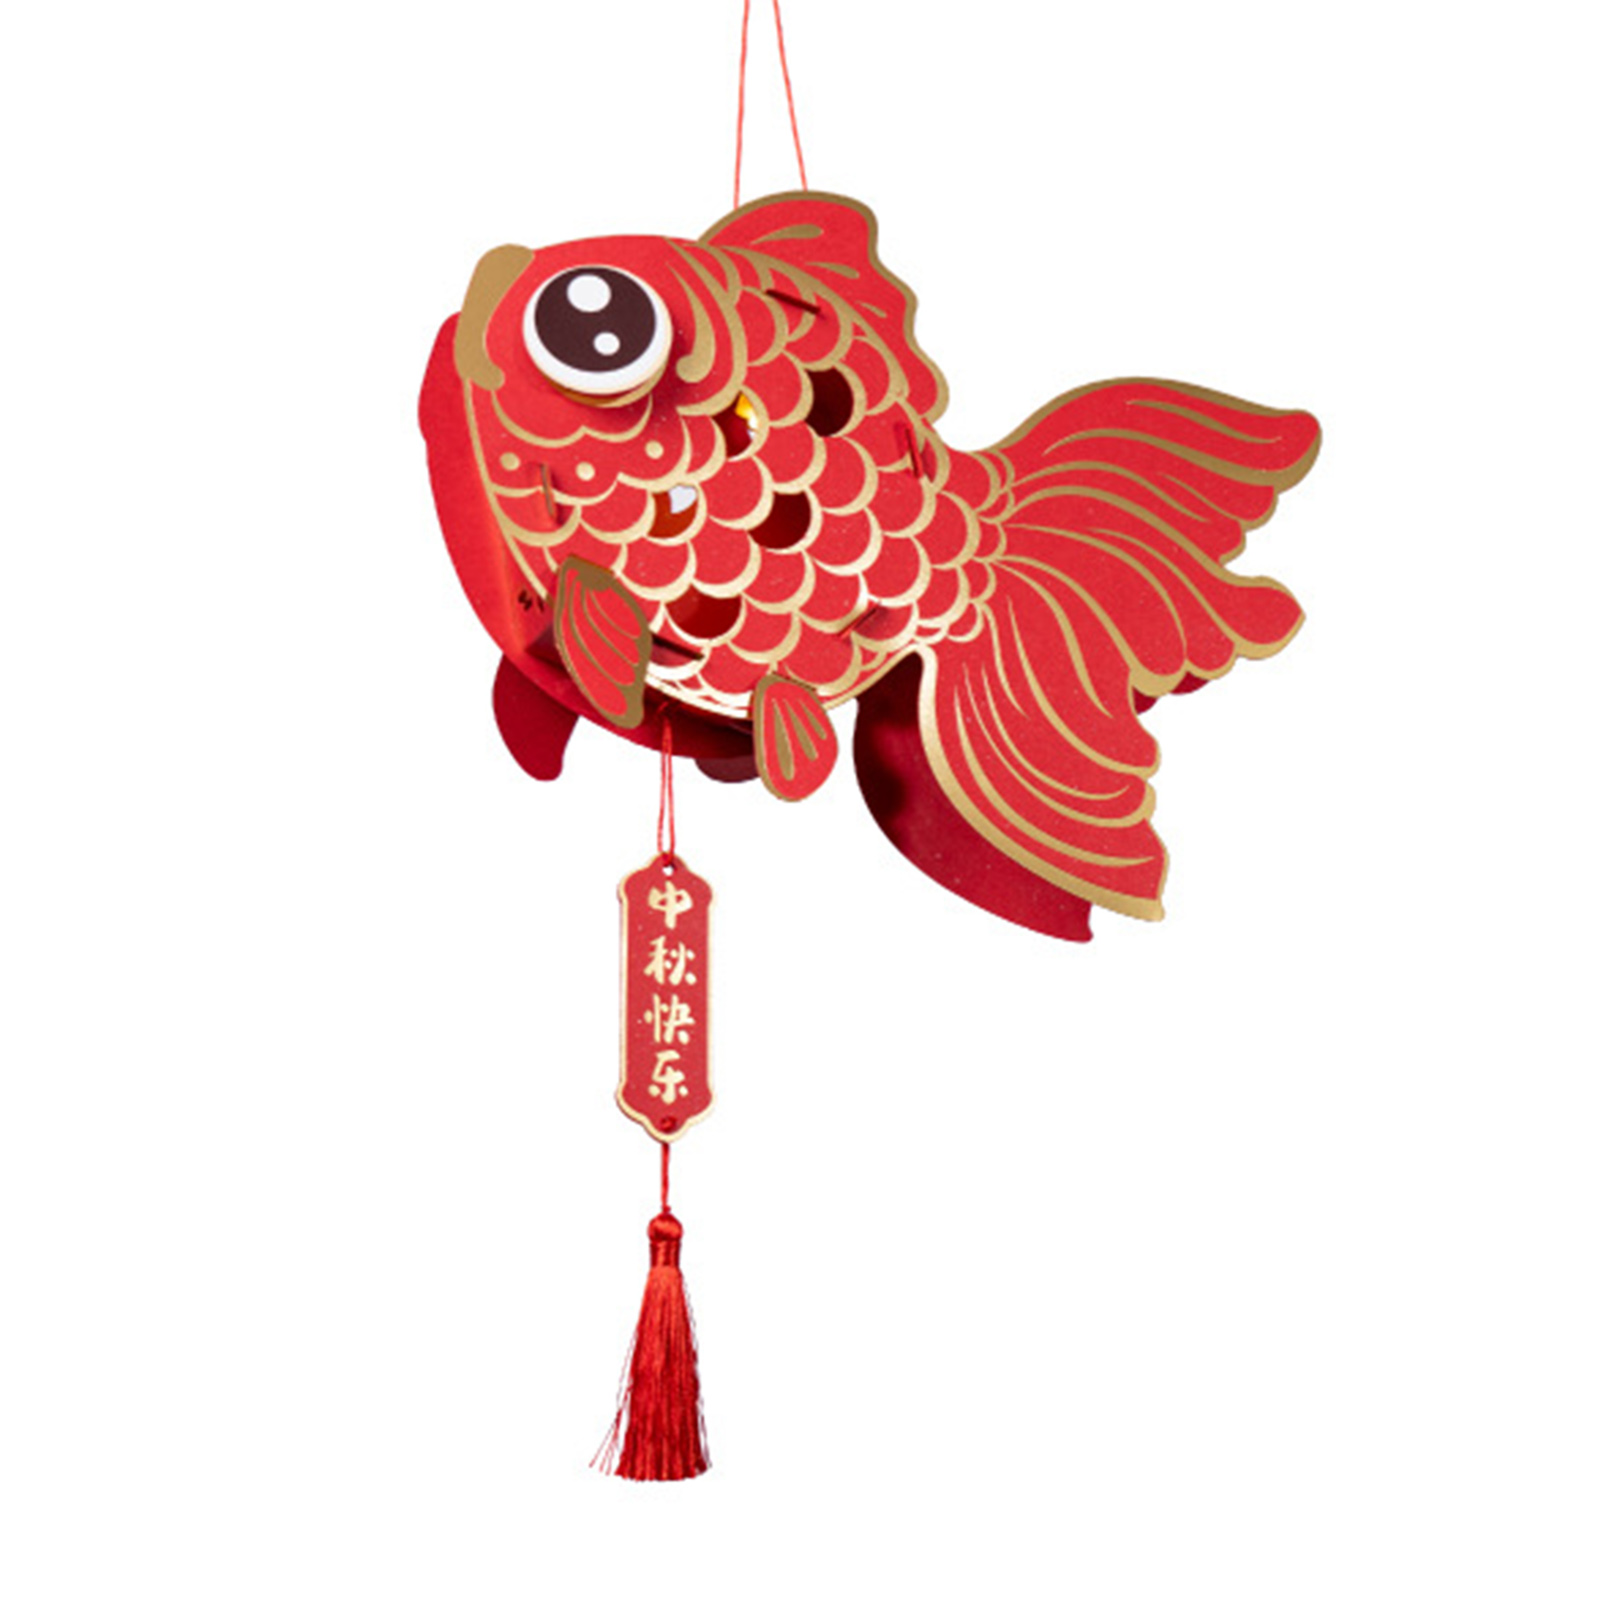 Microgood may mắn cá vàng Đèn Lồng Phong cách Trung Quốc Giấy Thủ Công đèn lồng trẻ em tự làm thủ công tết trung thu năm mới đèn lồng cầm tay trang trí tiệc tùng lễ hội